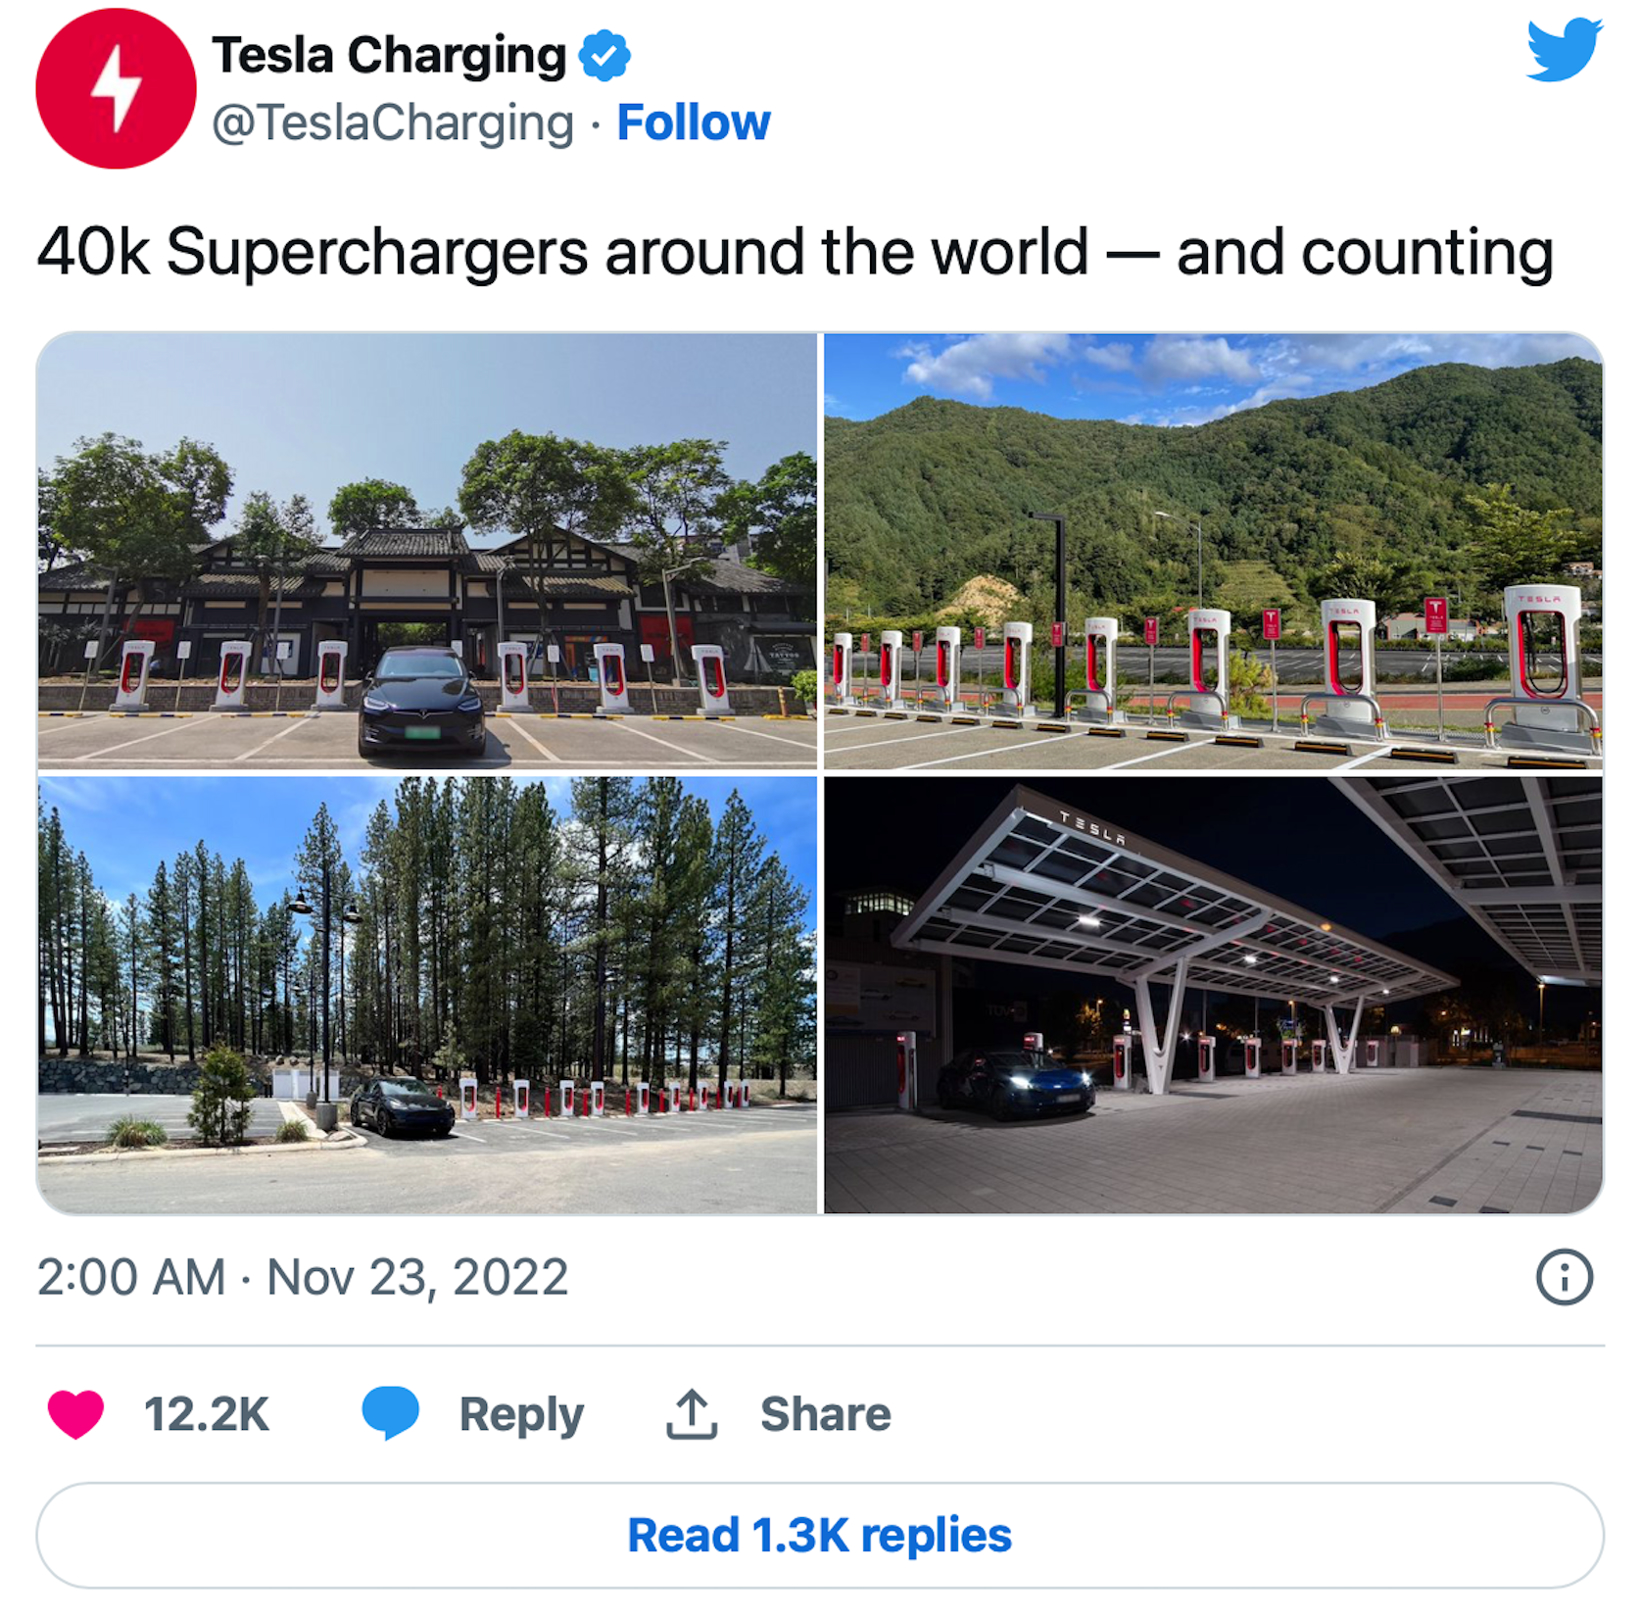 特斯拉全球超级充电桩数量达4万个